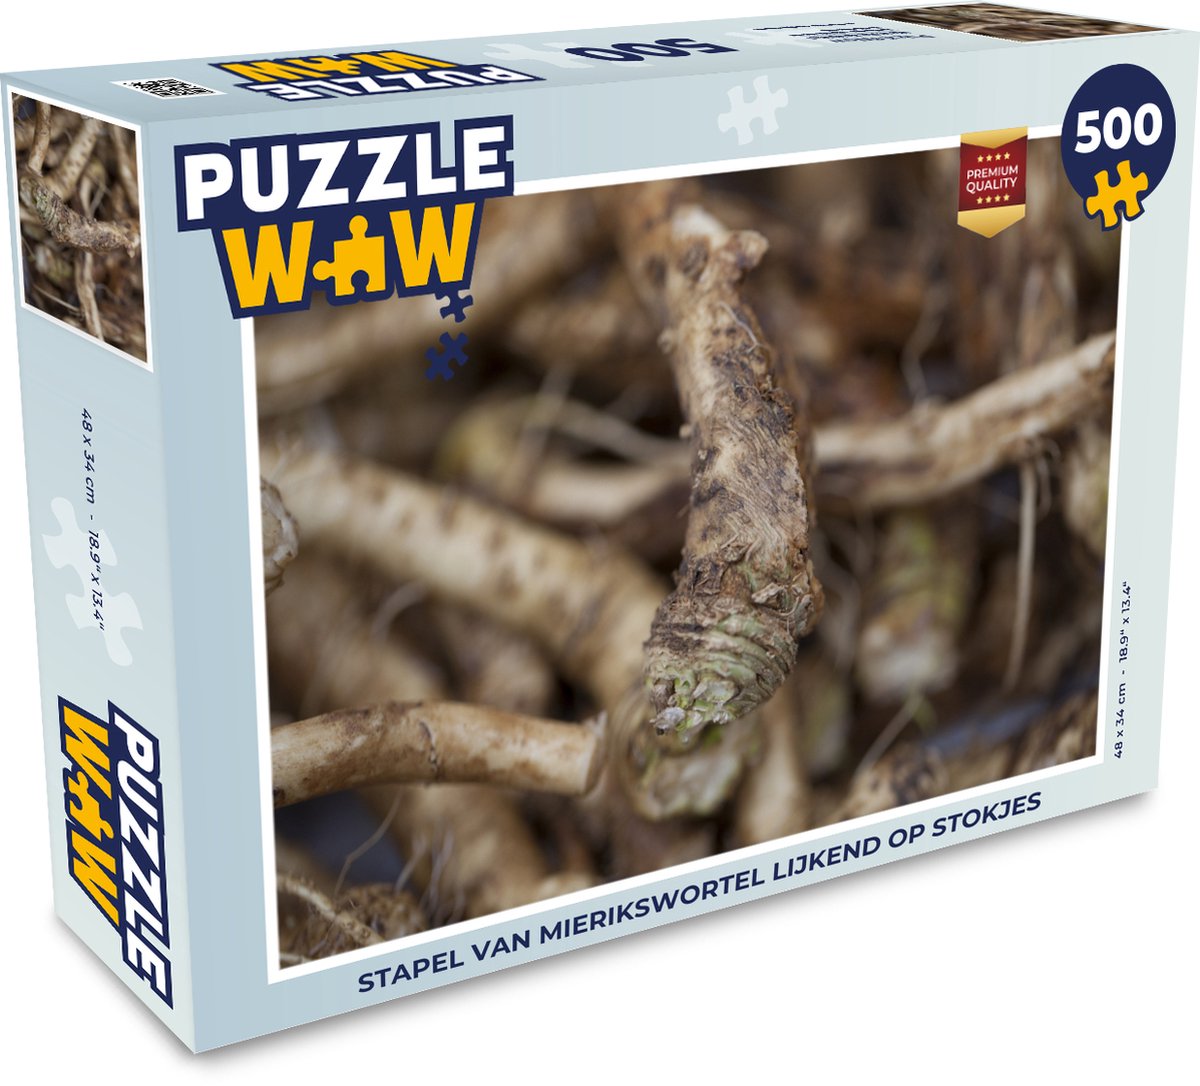 Afbeelding van product Puzzel 500 stukjes Mierikswortel - Stapel van mierikswortel lijkend op stokjes - PuzzleWow heeft +100000 puzzels